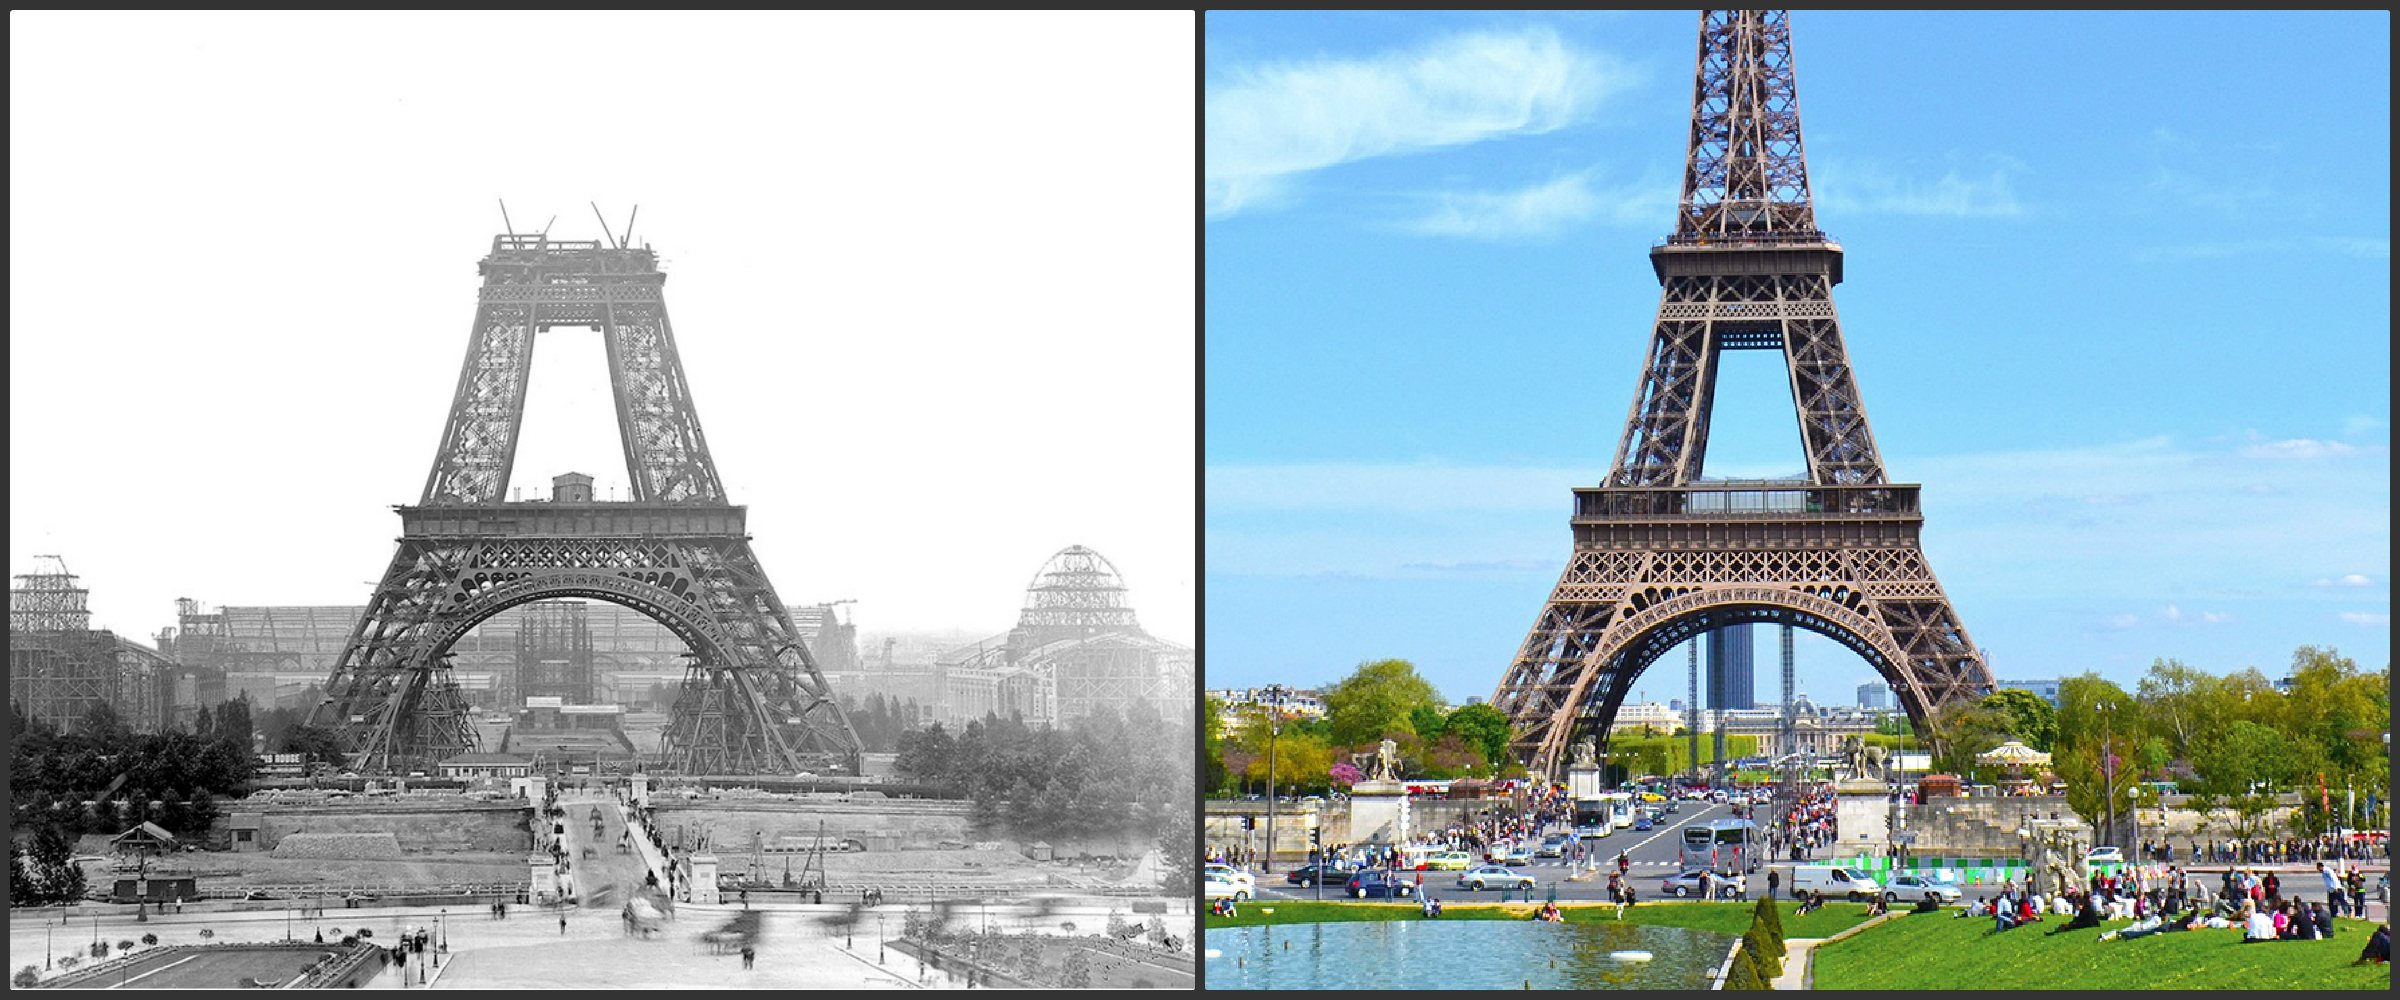 13 fotografii inedite ce ilustrează istoria celor mai cunoscute atracţii turistice din lume. Cum arătau Turnul Eiffel, Palatul Westminster sau Tower Bridge la începuturile construcţiei lor. Galerie FOTO